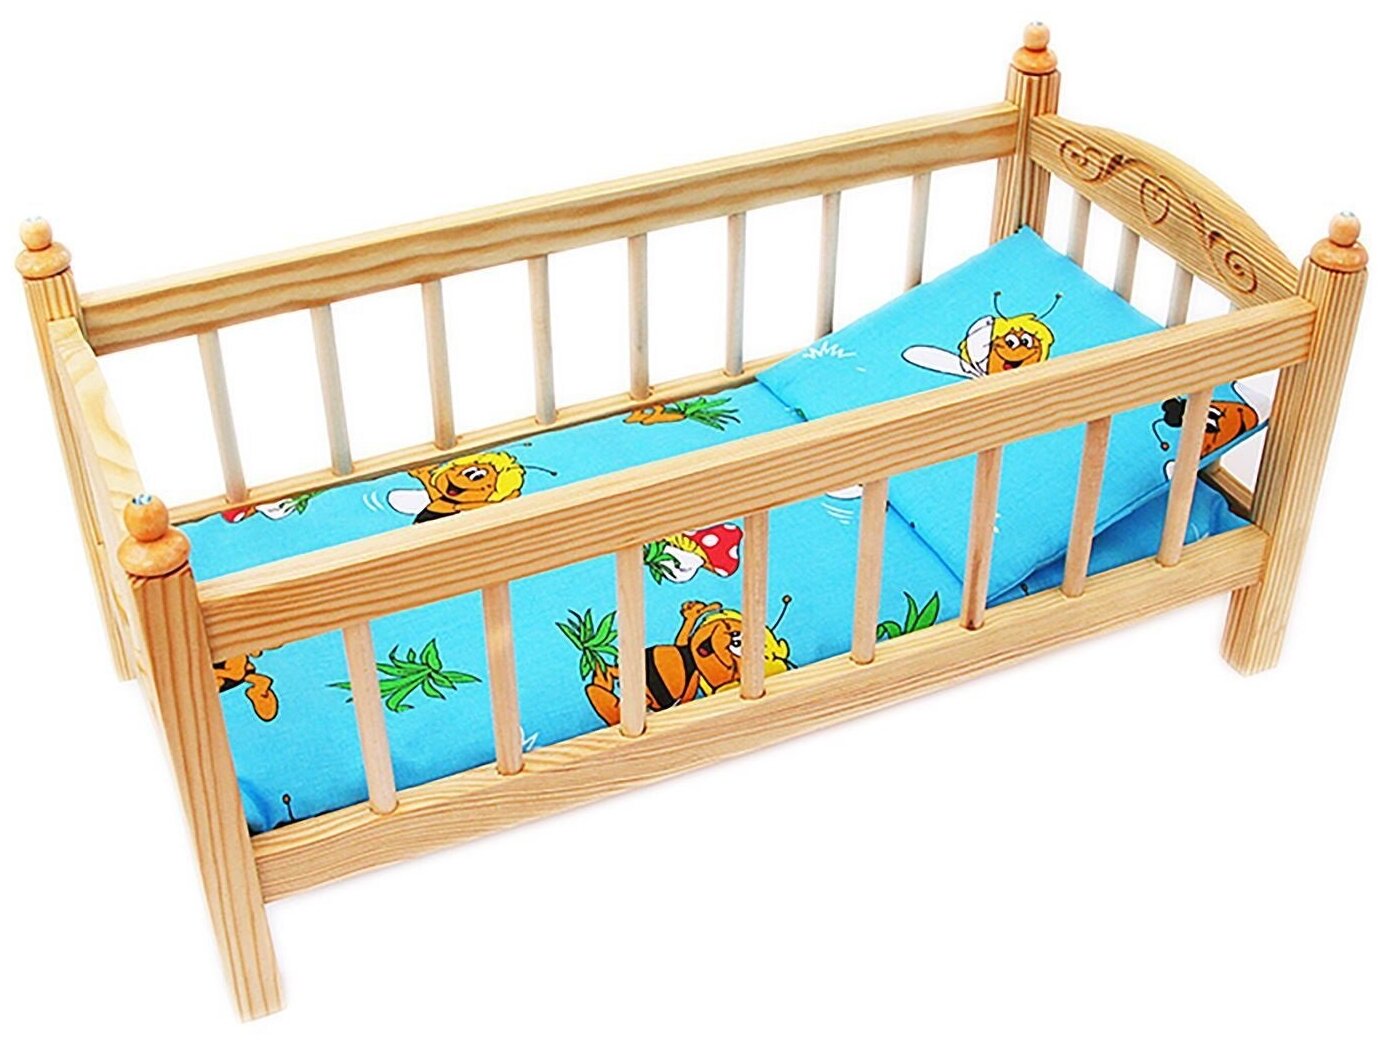 Кроватка для младенца своими руками: Детская кроватка своими руками - чертежи, разъяснения - Мои статьи - Каталог статей